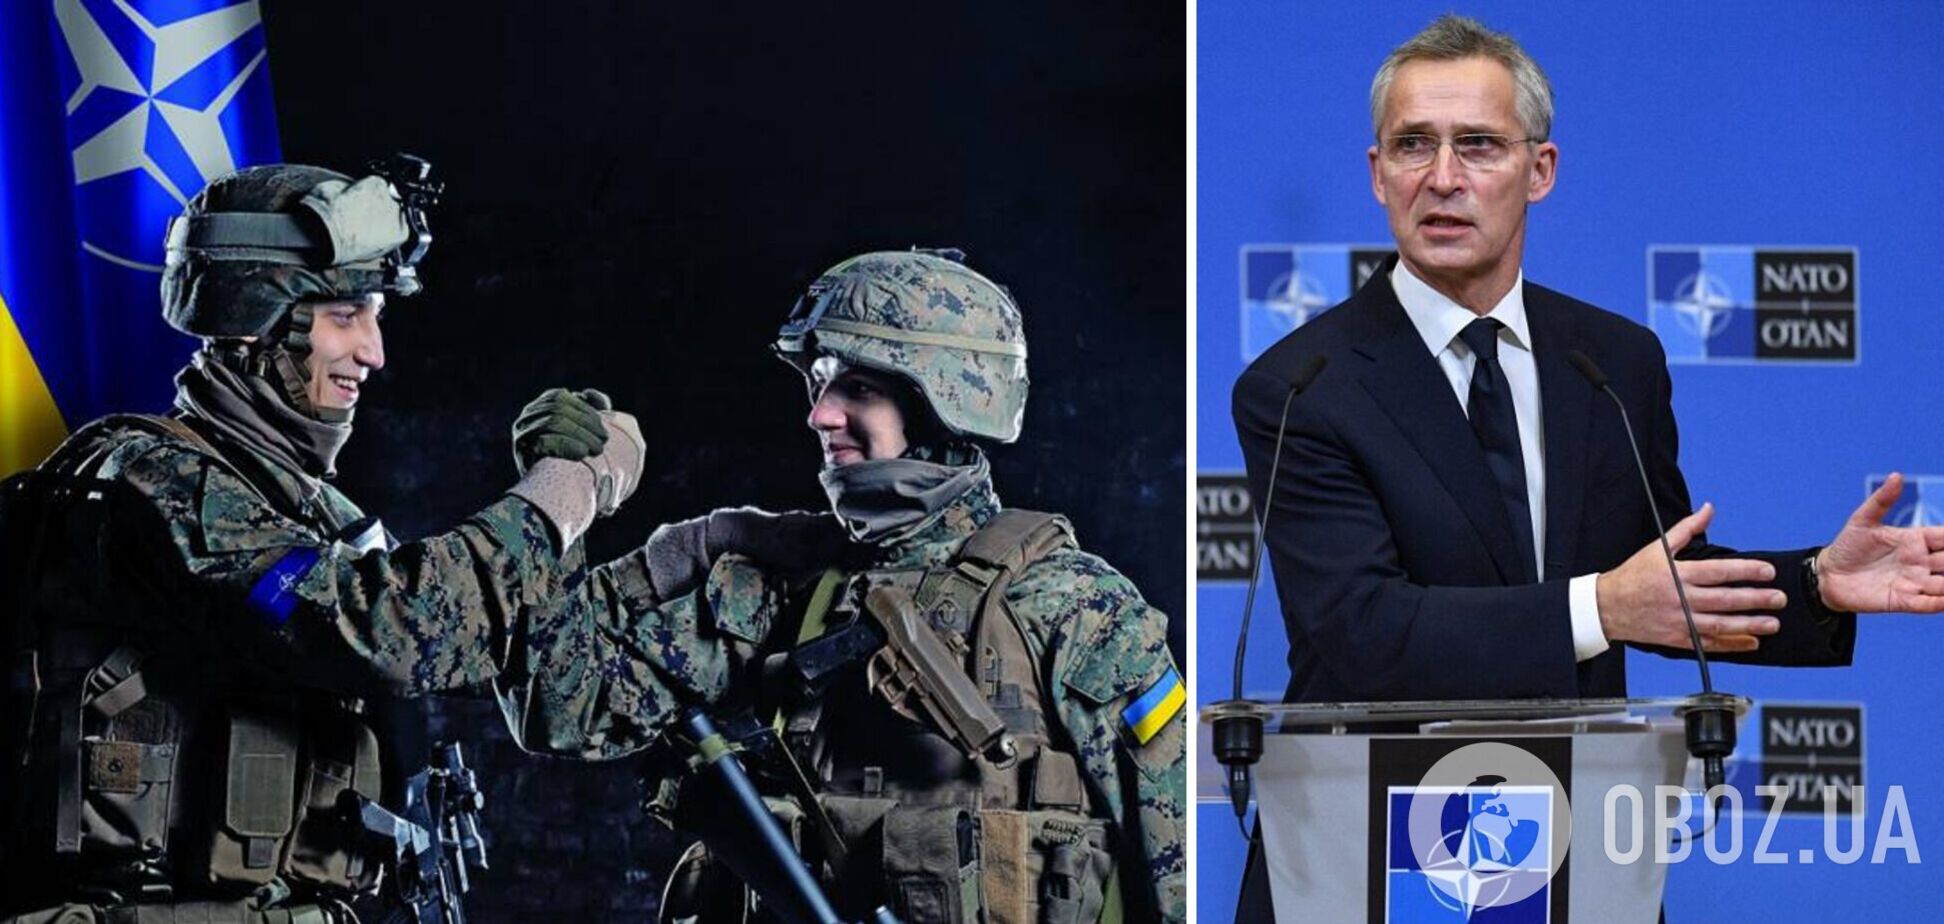 Столтенберг отметил героизм ВСУ в боях за Бахмут и Соледар и призвал усилить поддержку Украины: мы должны делать гораздо больше